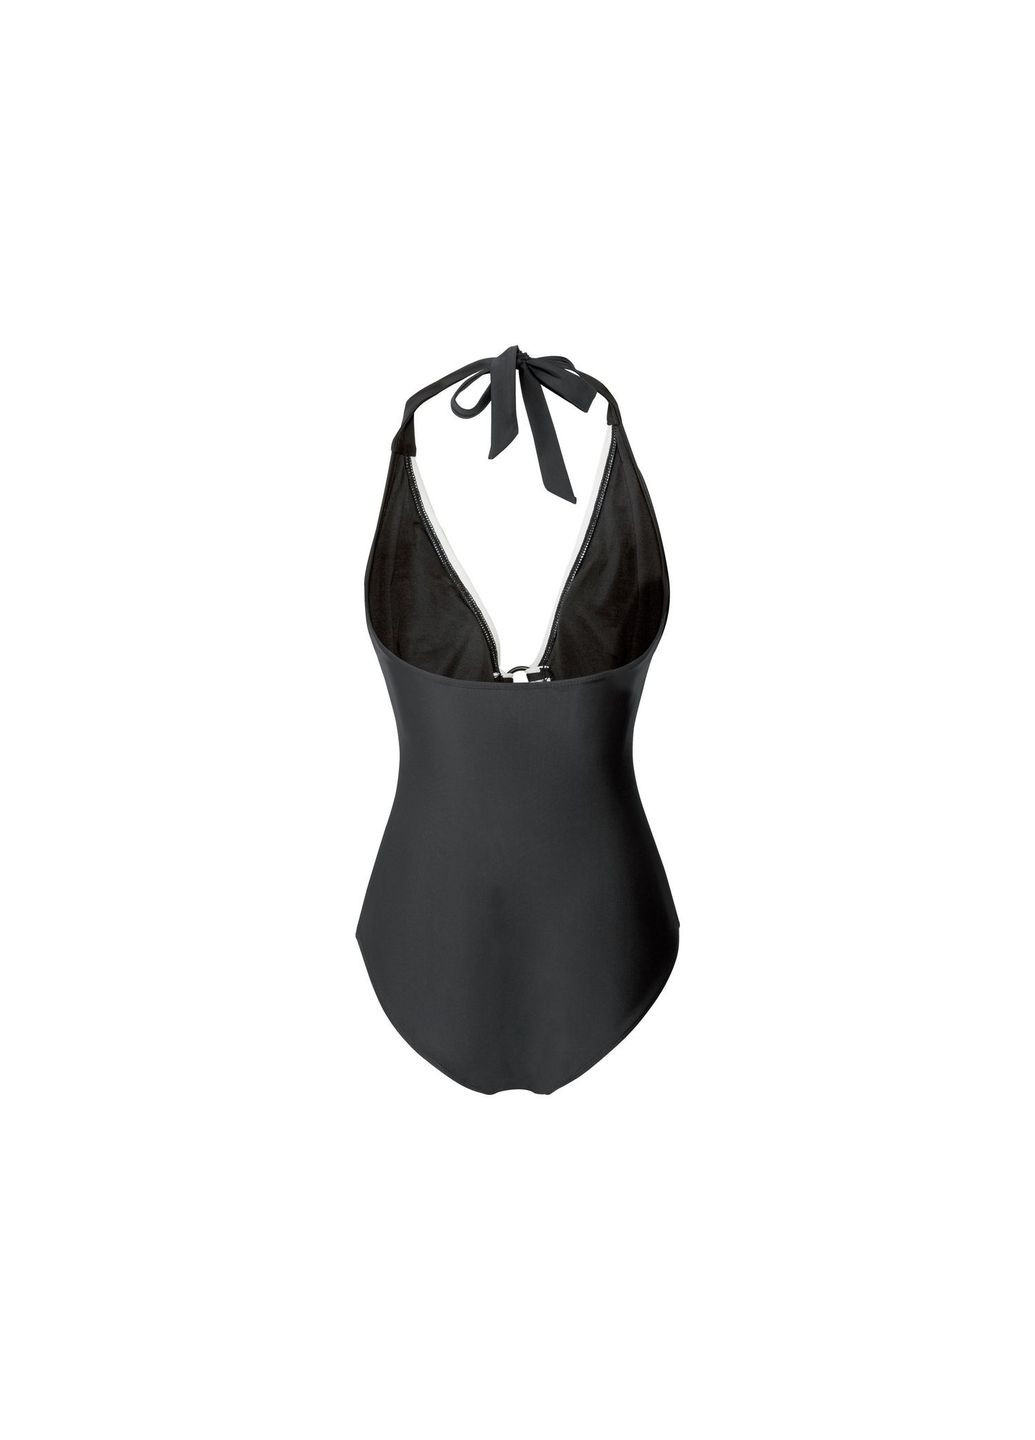 Черный купальник слитный на подкладке для женщины creora® 325480 бикини Esmara